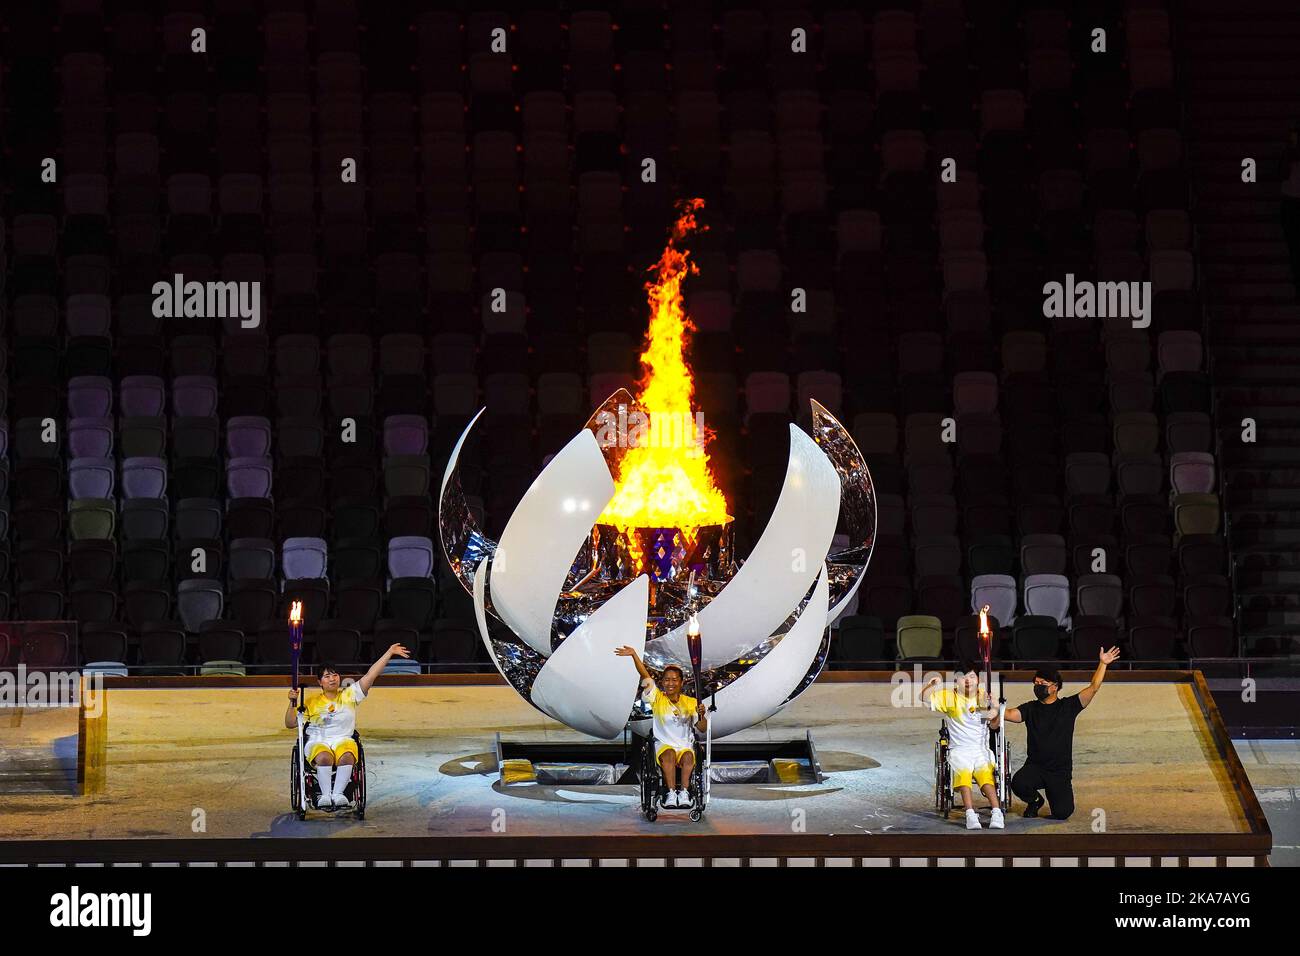 A Tokyo, la flamme olympique n'apportera pas la lumière - Francs Jeux